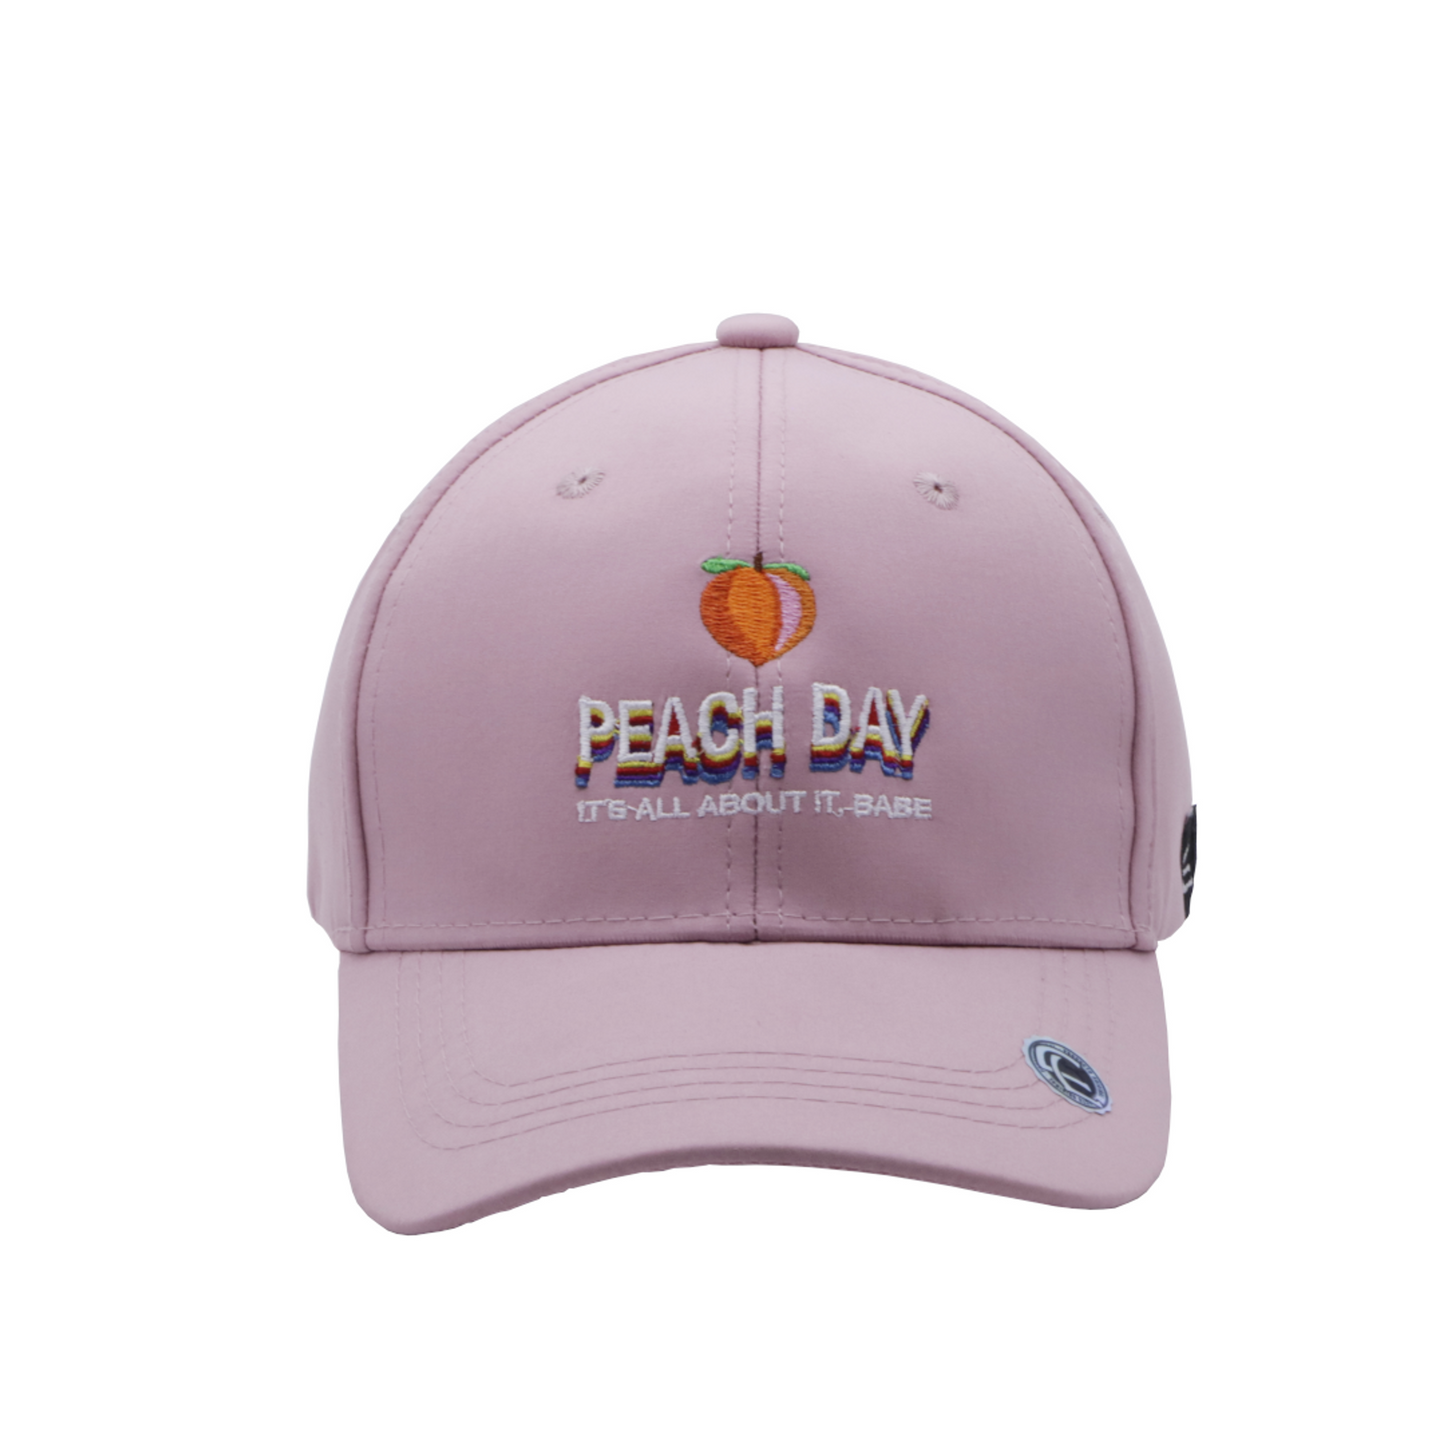 Peach day - Cap Land